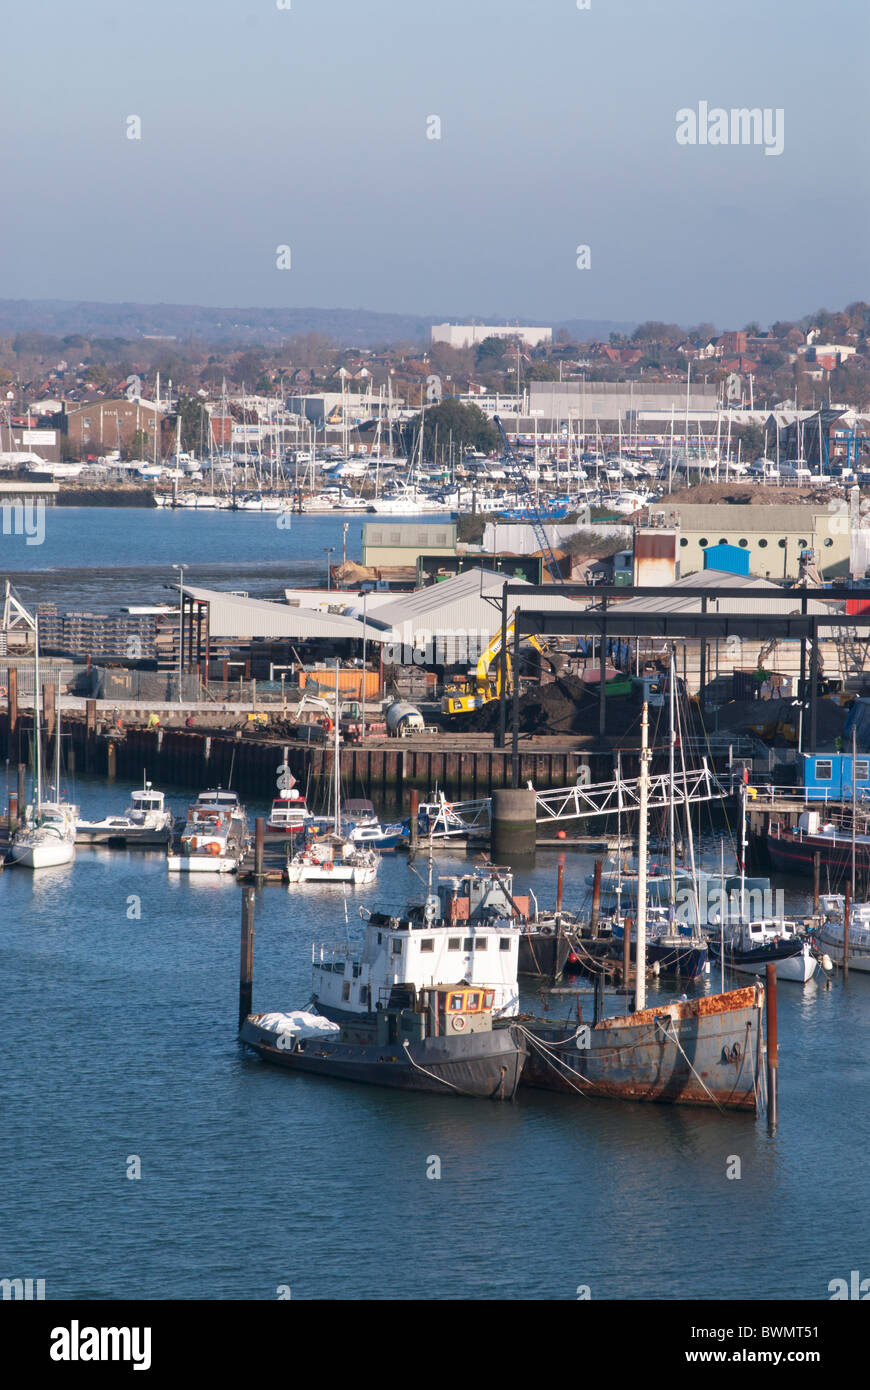 Avis de Southampton Itchen avec pont de bateaux sur l'eau Banque D'Images